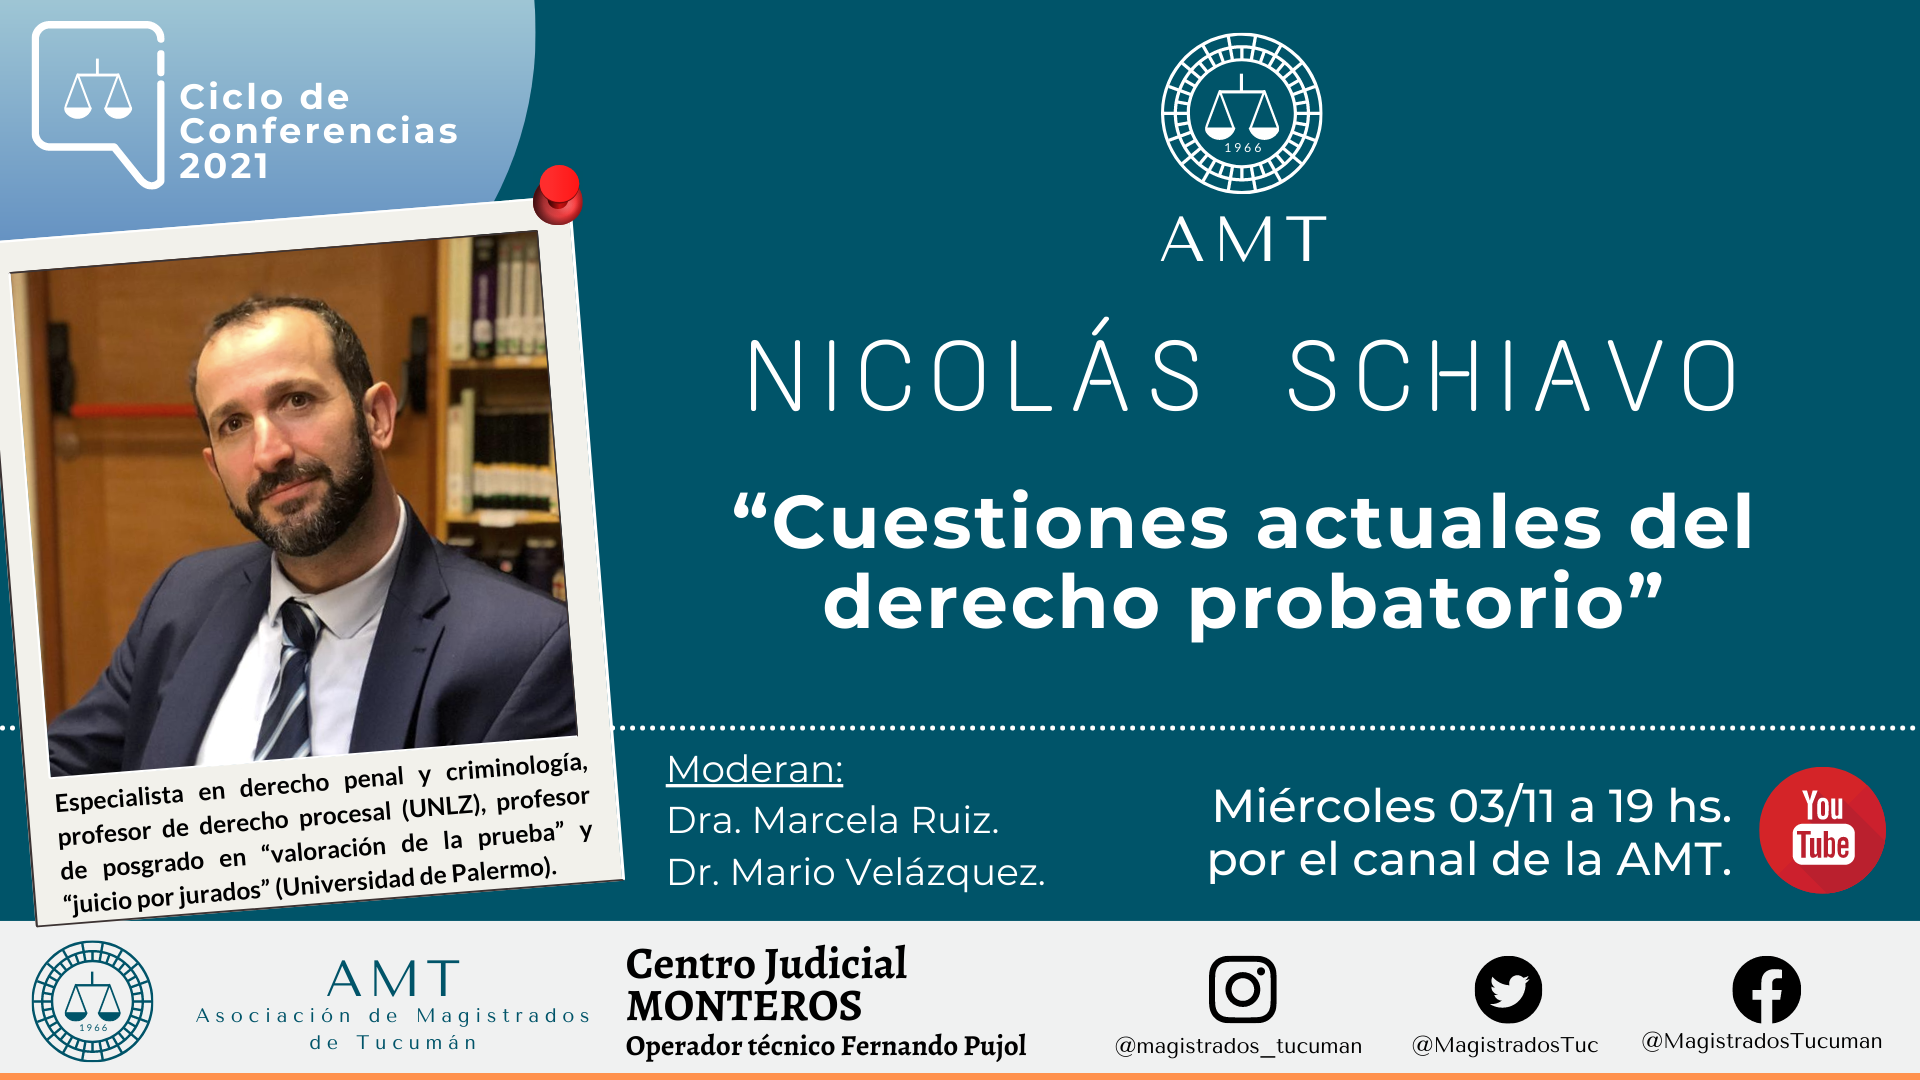 Vuelva a ver la conferencia de Nicolás Schiavo «Cuestiones actuales del derecho probatorio»